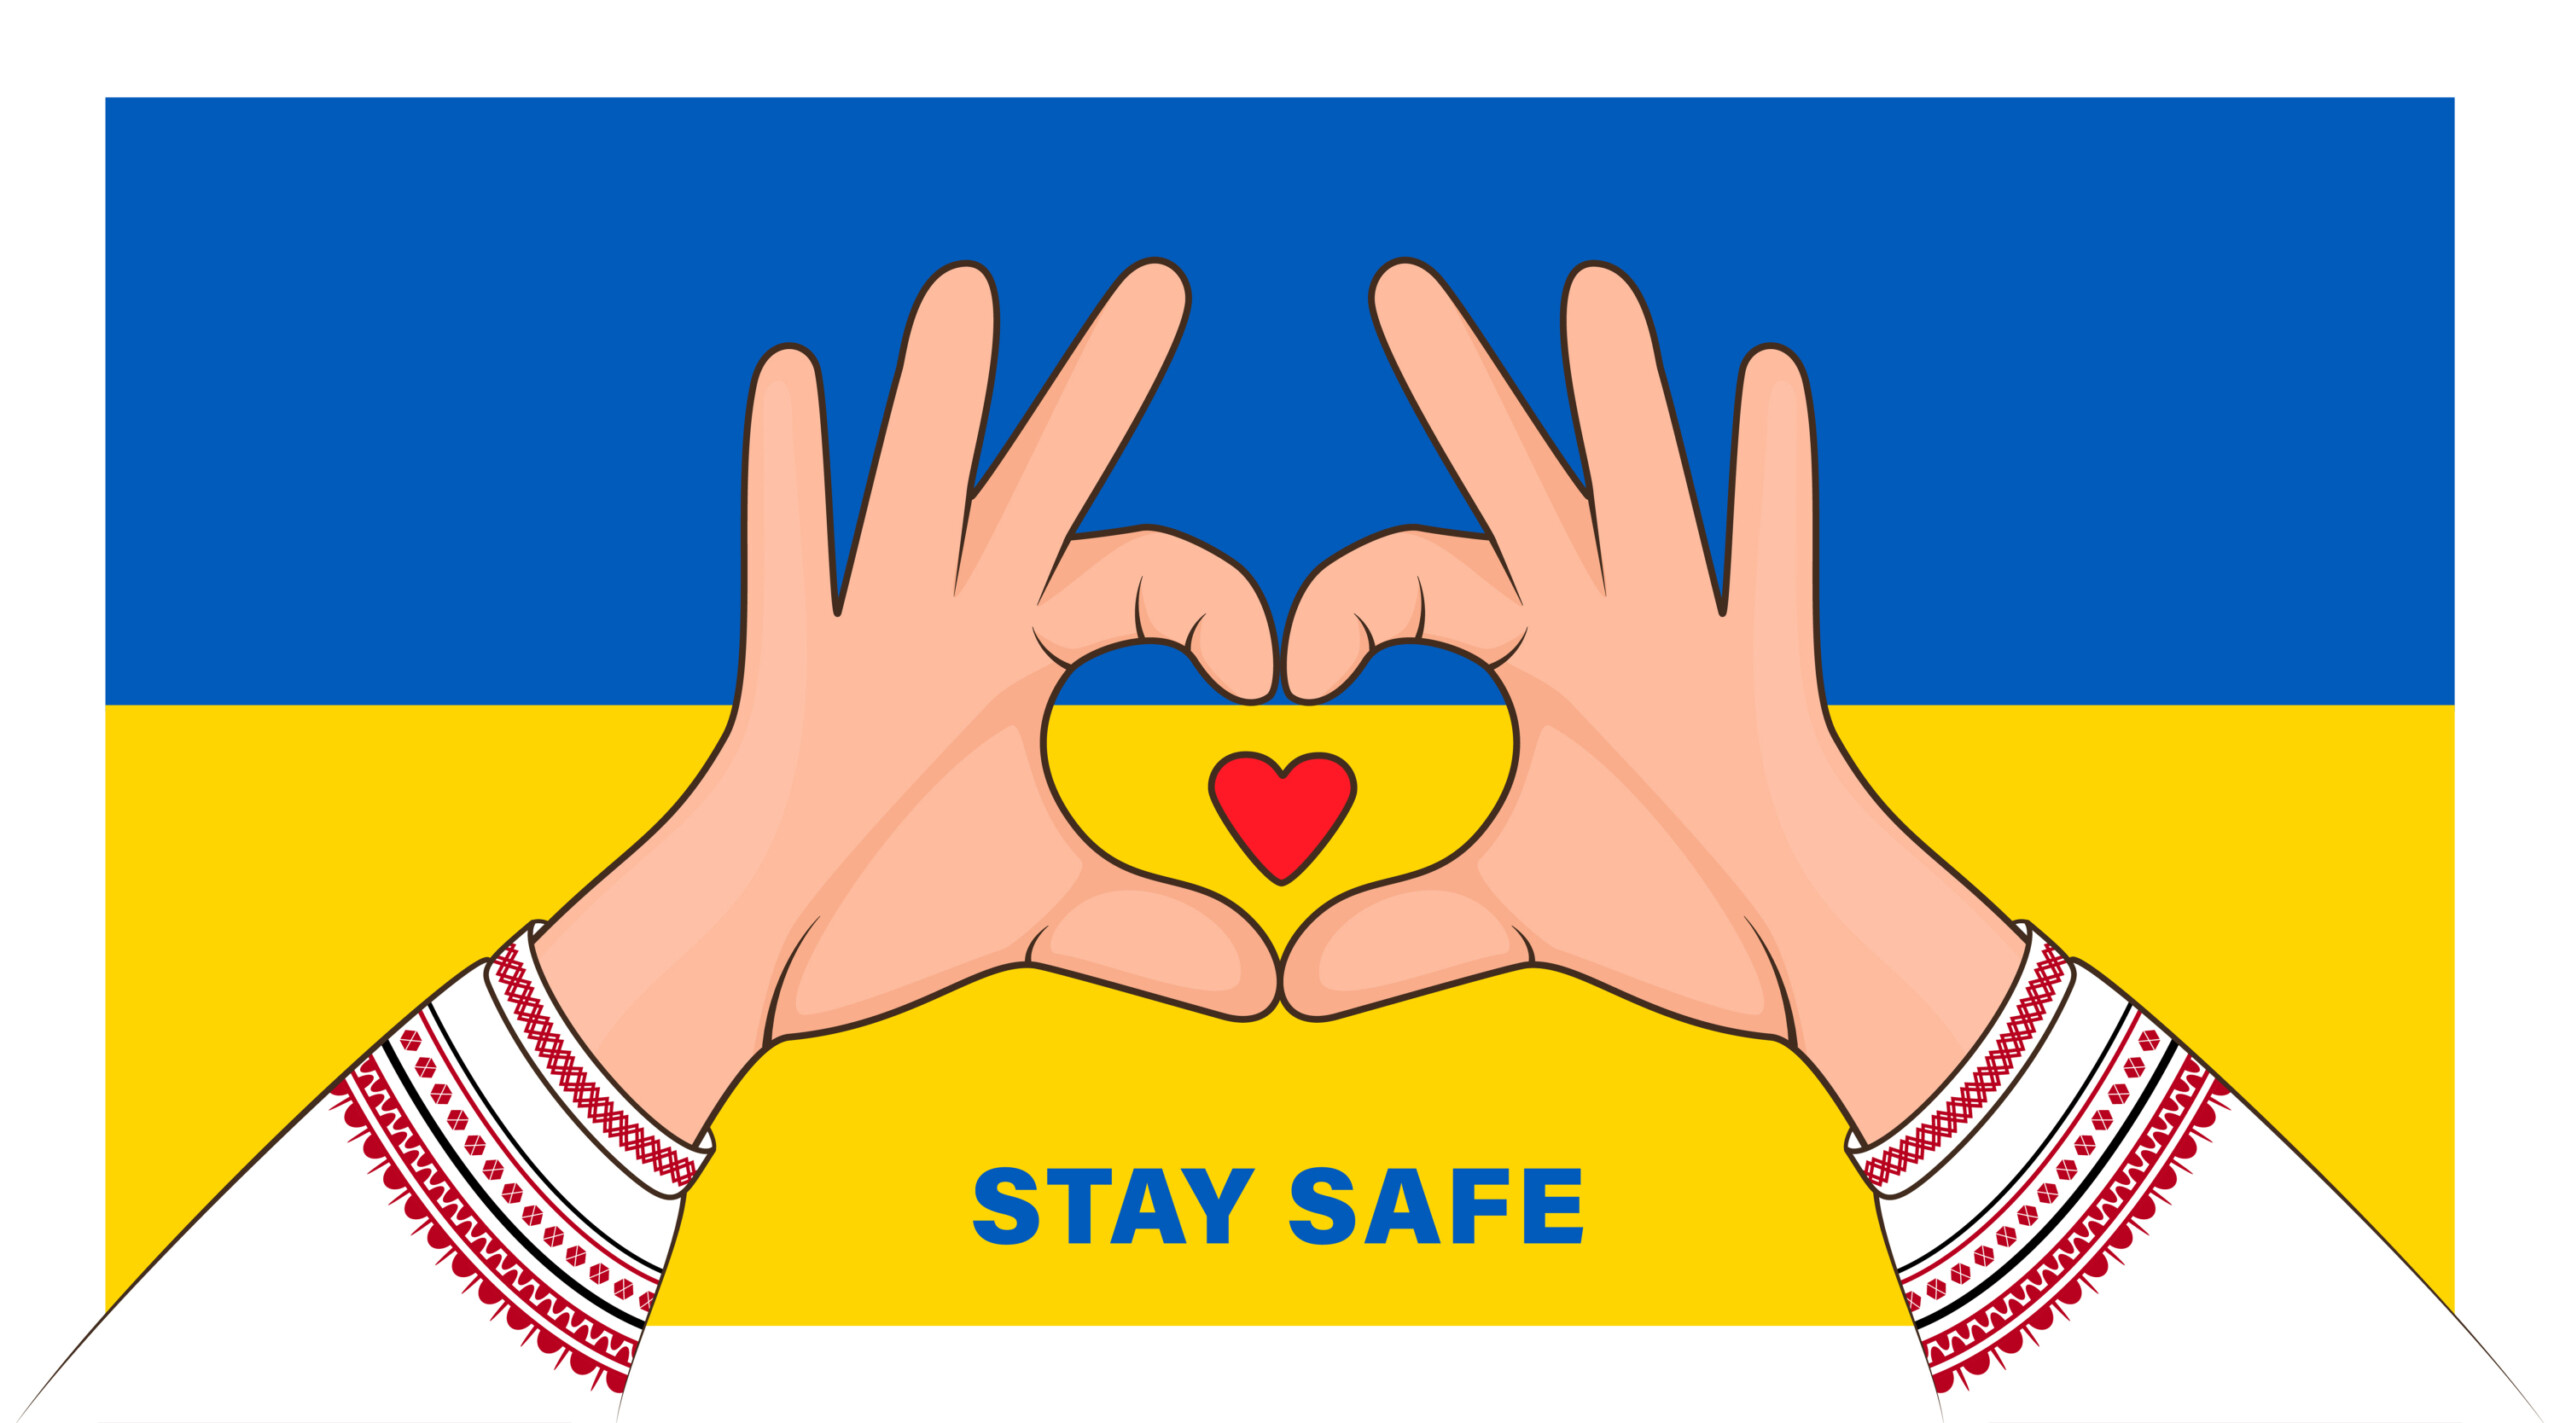 Pray For Ukraine Peace - Original image